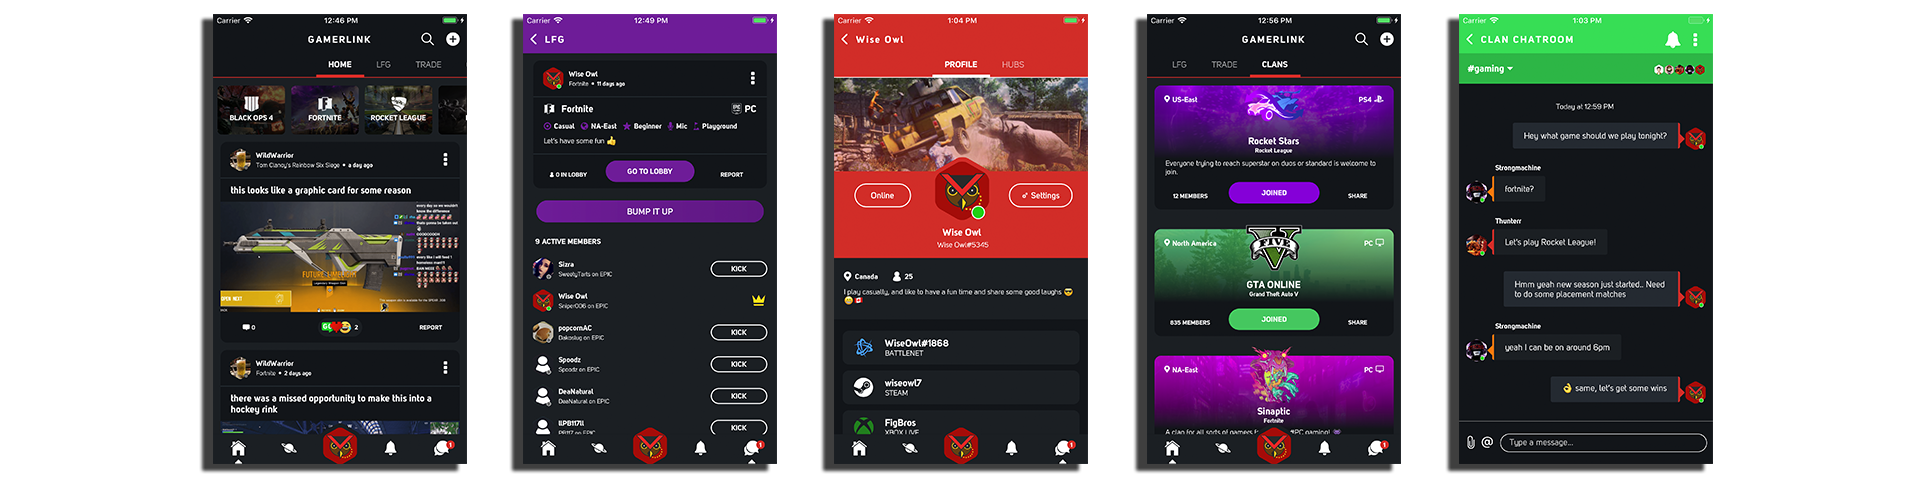 new 5 screen gamerlink - fortnite partner finder app